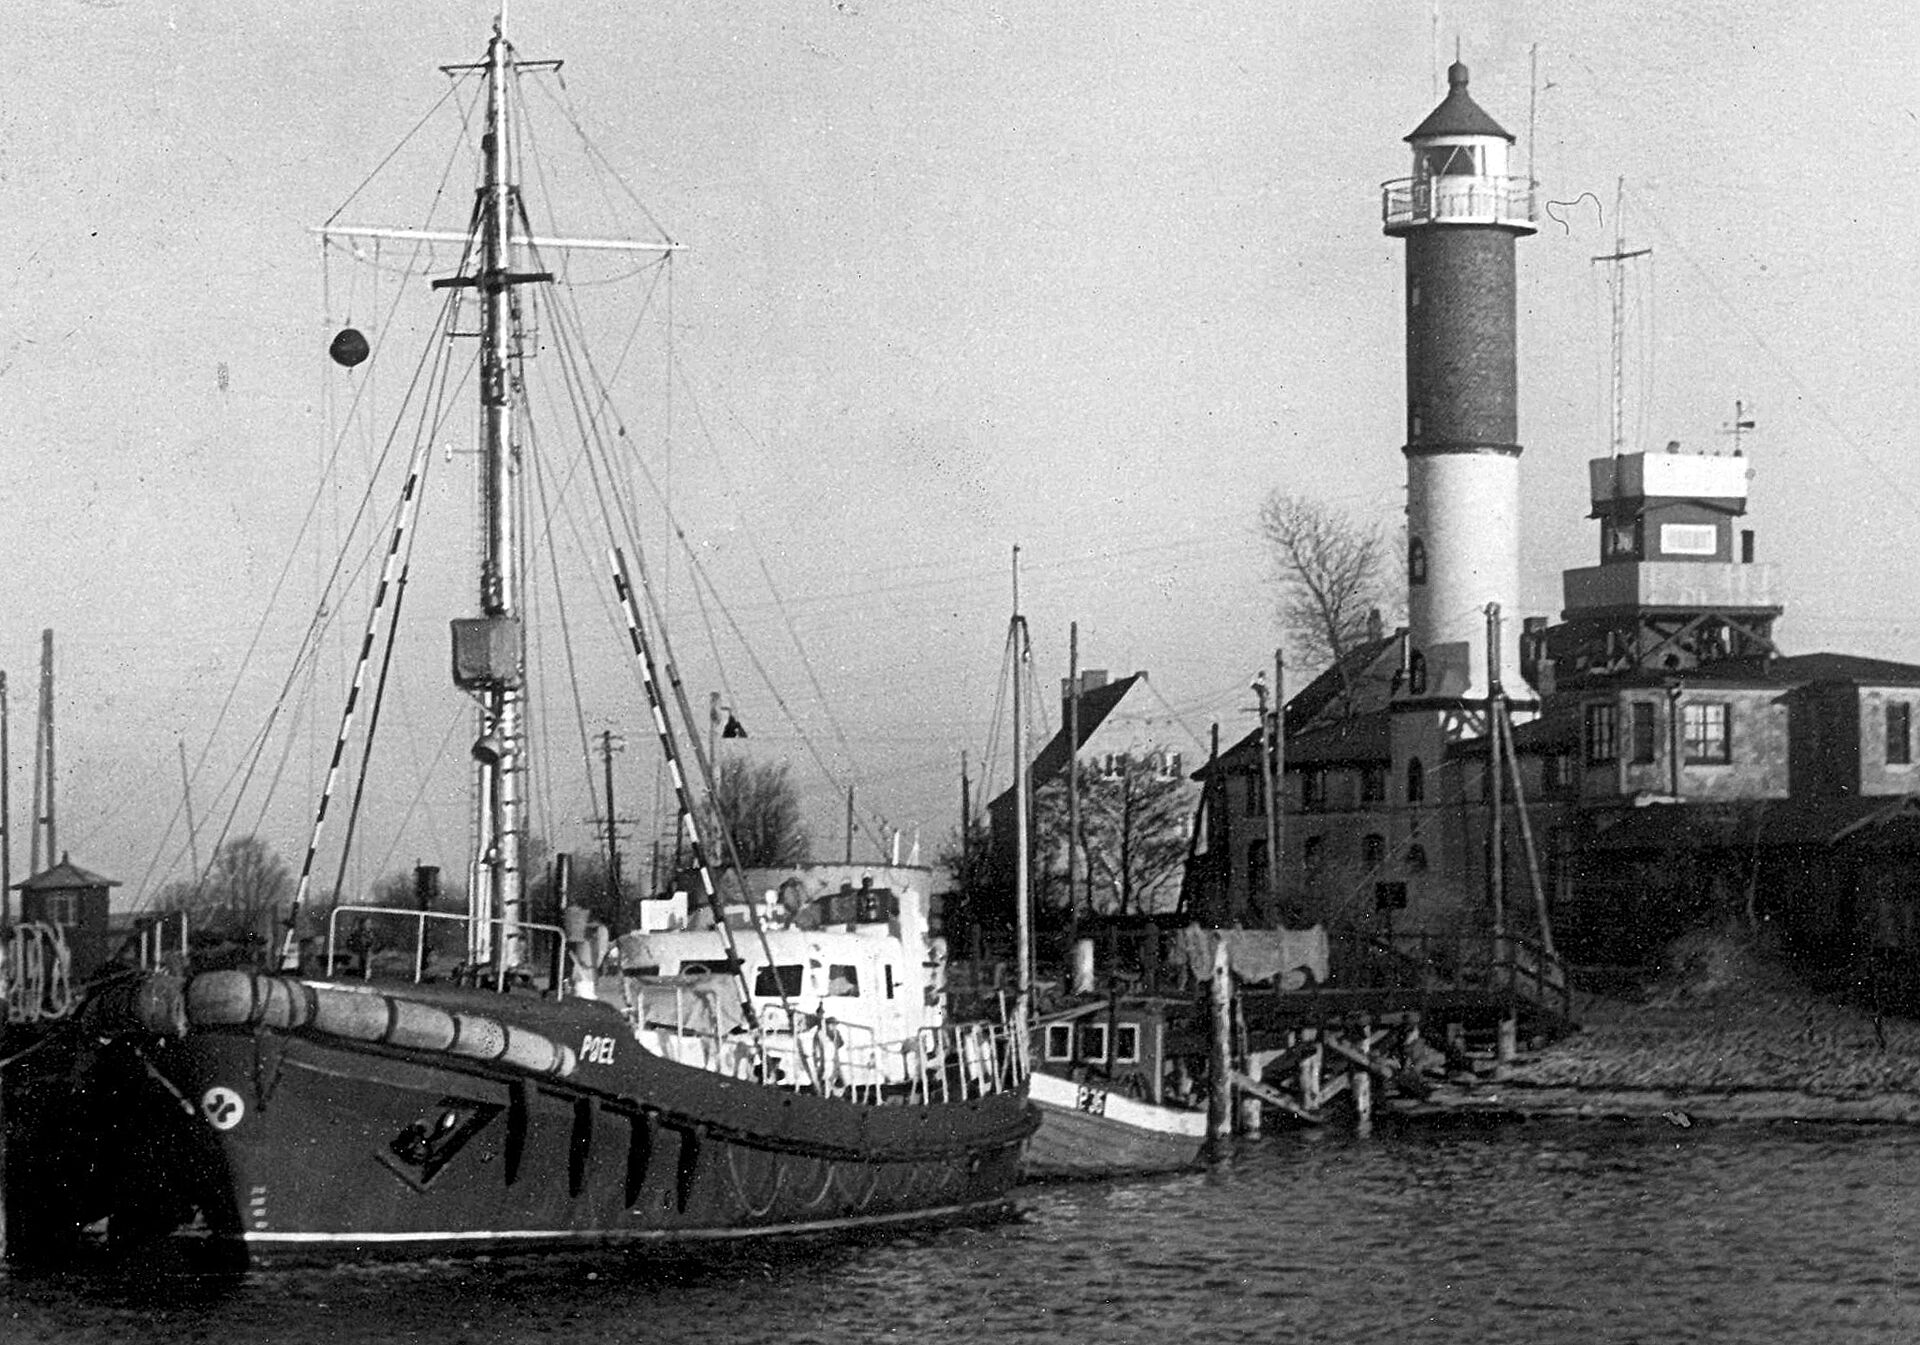 Schwarz-weiß Foto von einem anliegenden Schiff